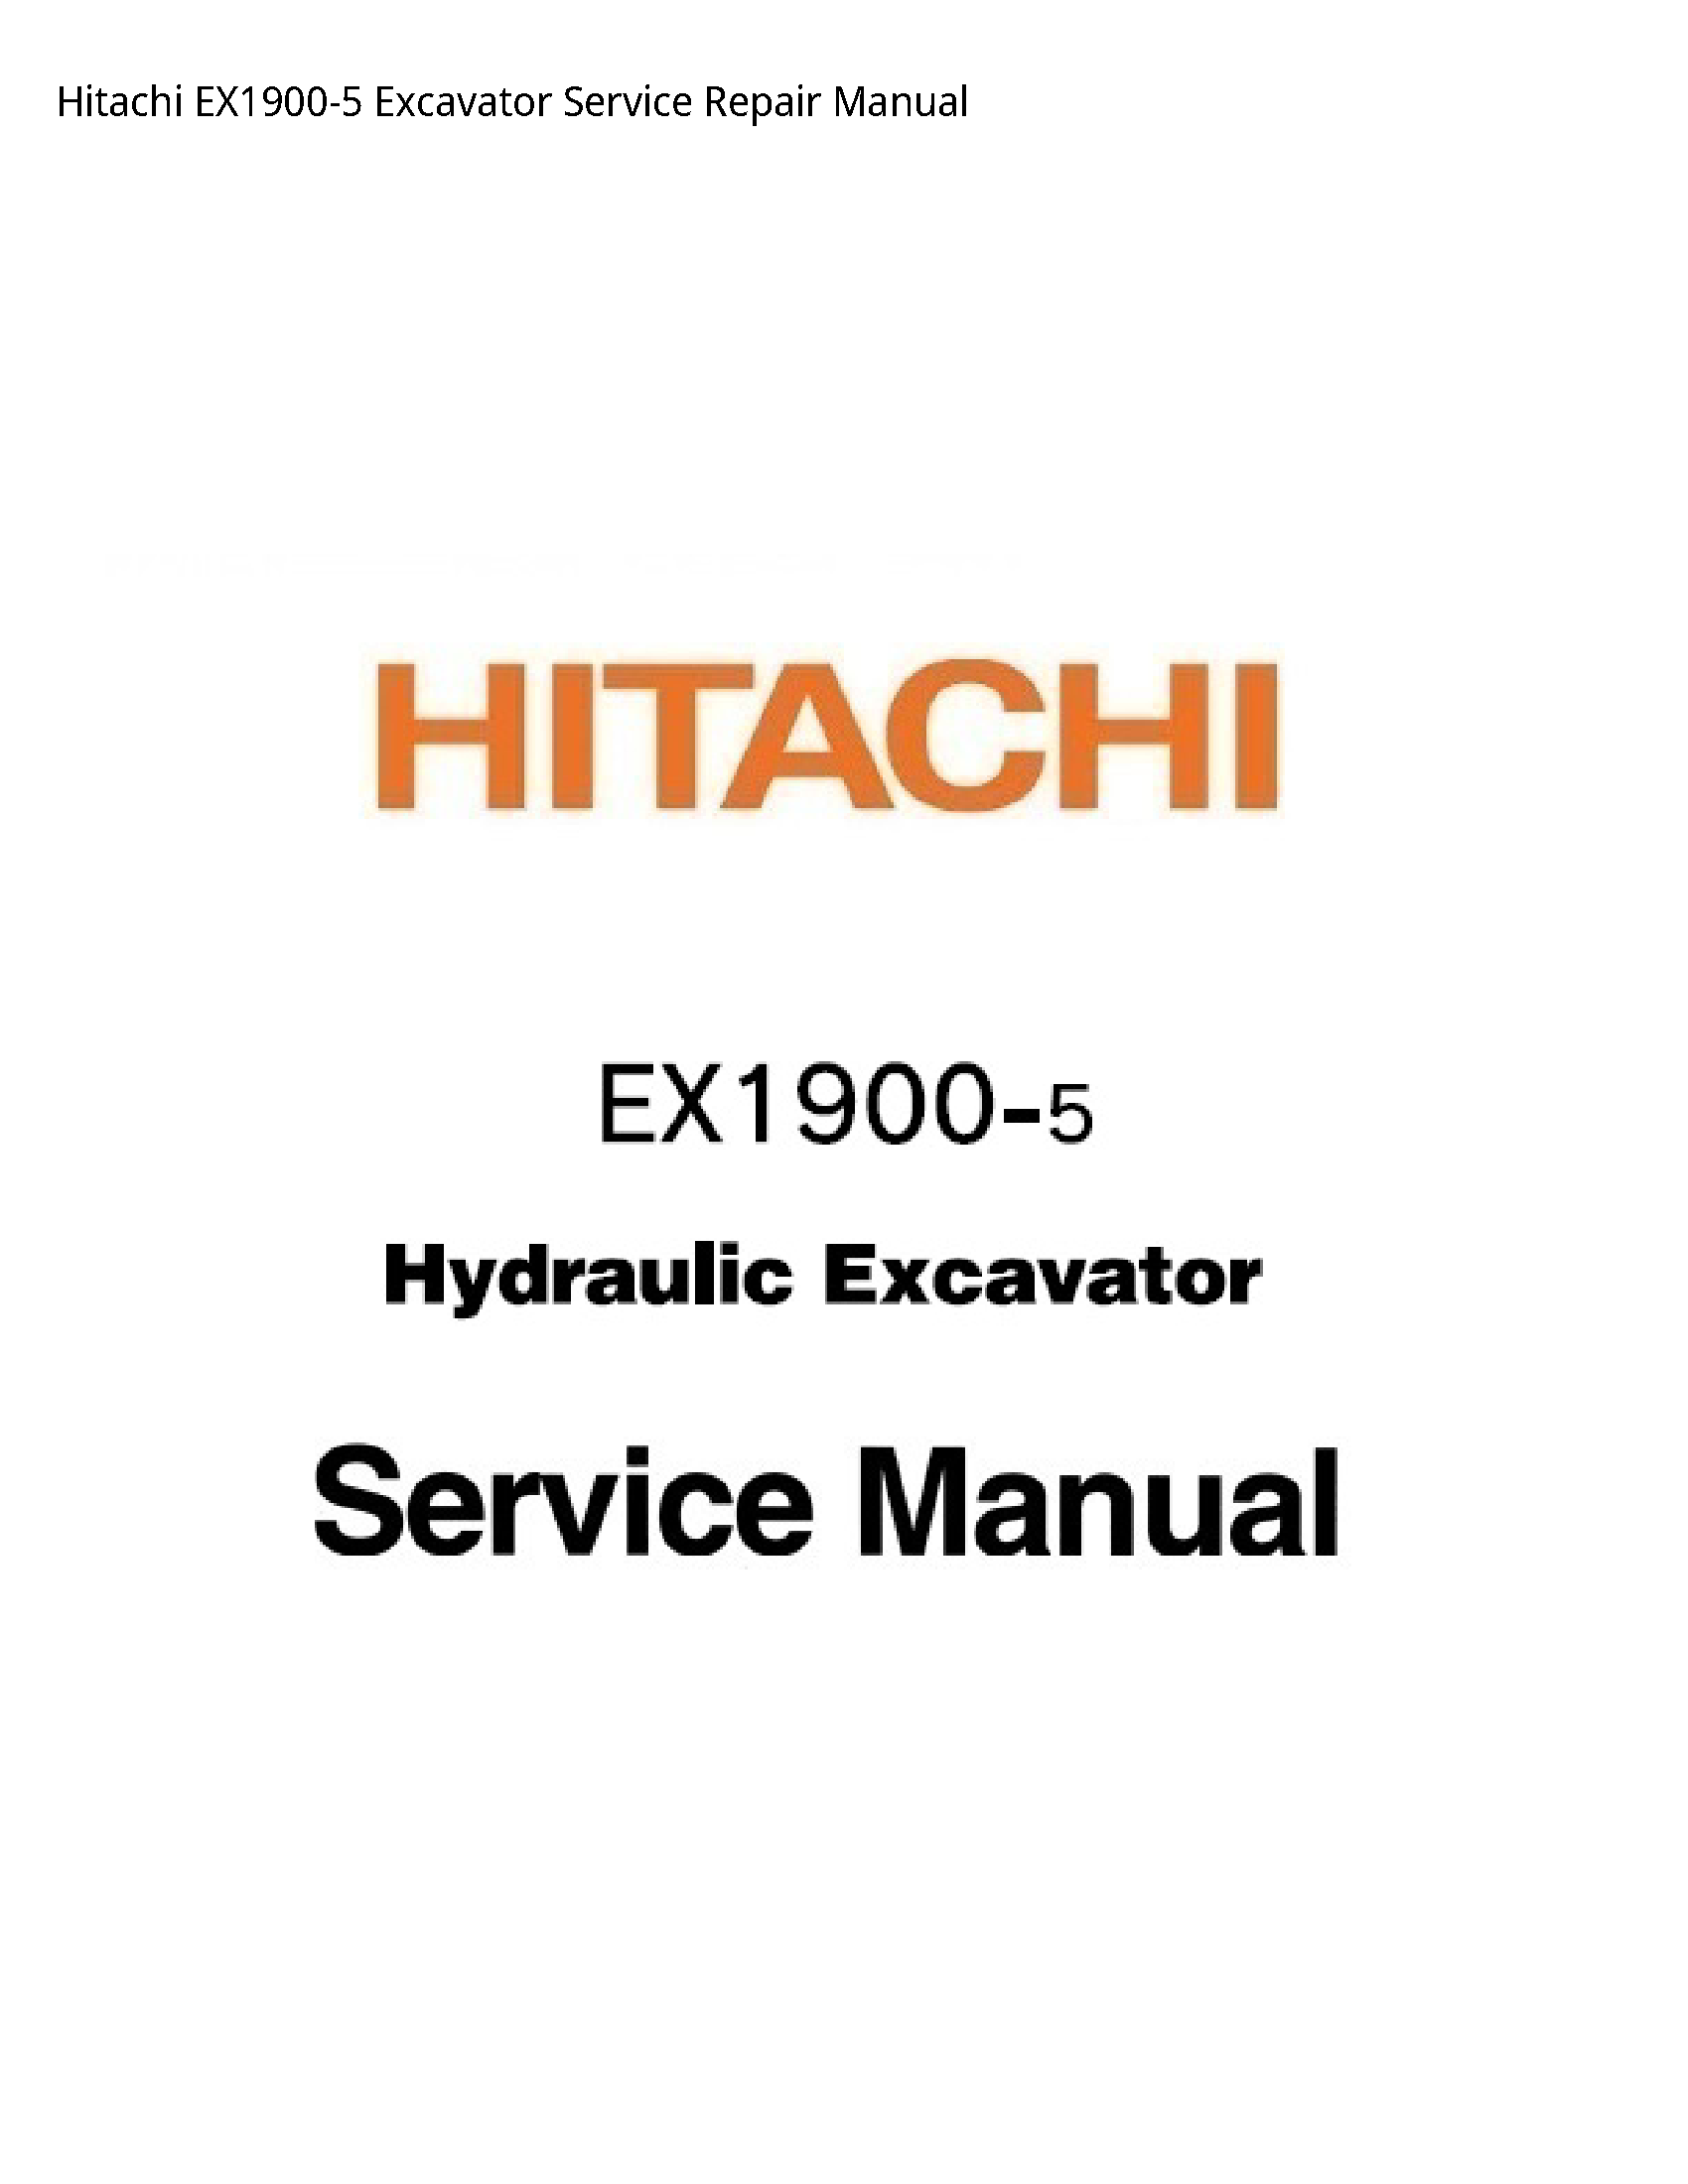 Hitachi EX1900-5 Excavator manual